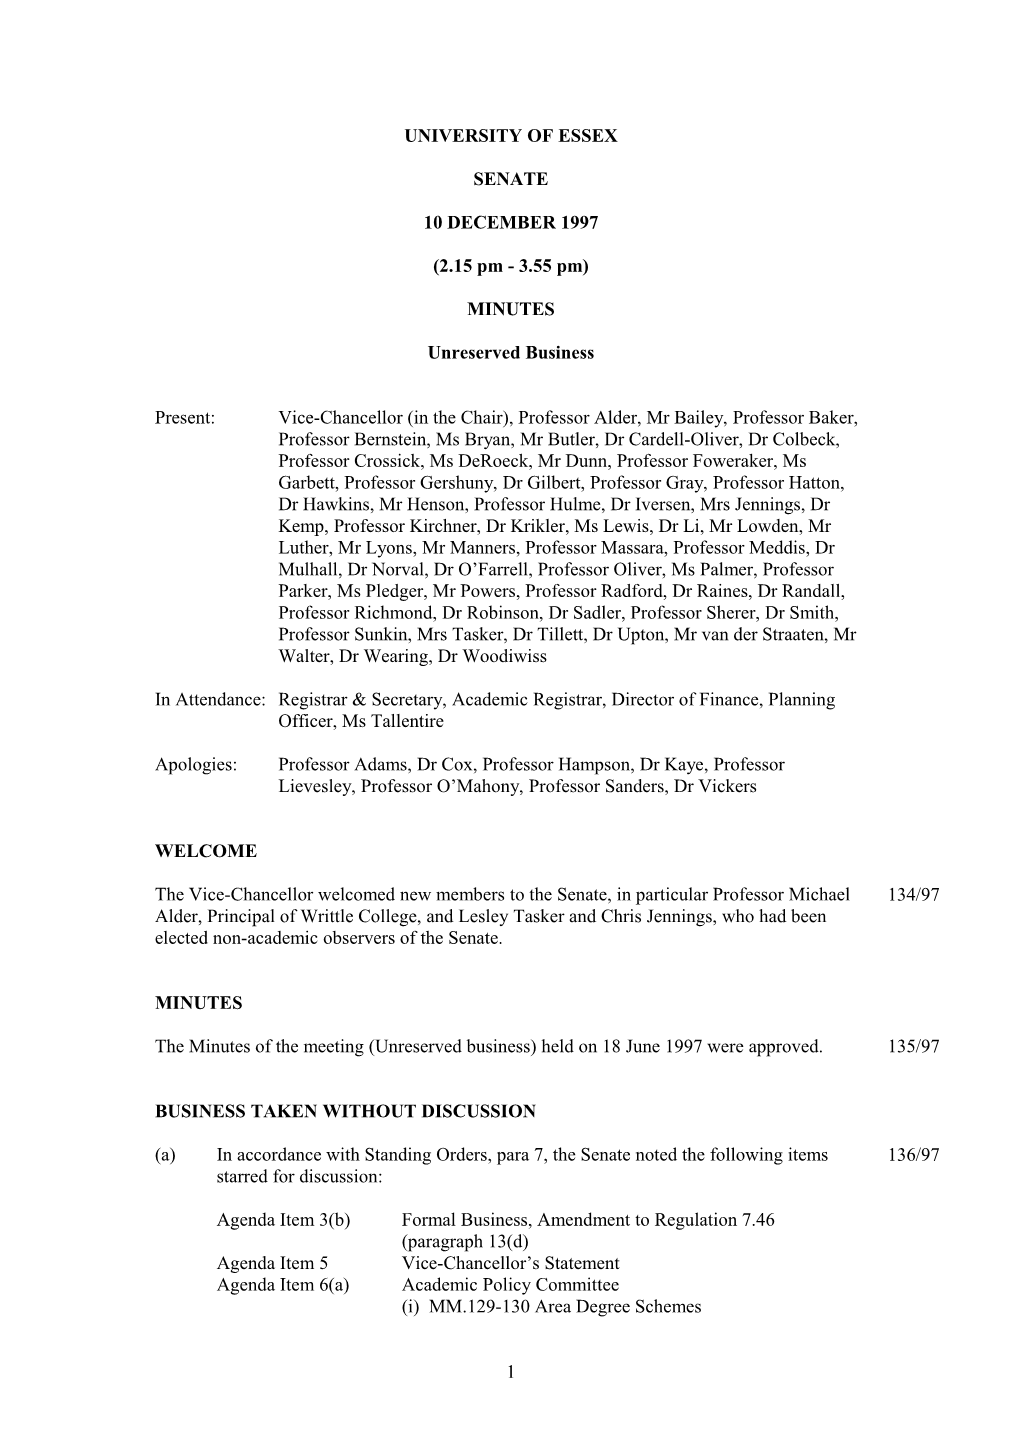 Senate Minutes December 1997 - University of Essex